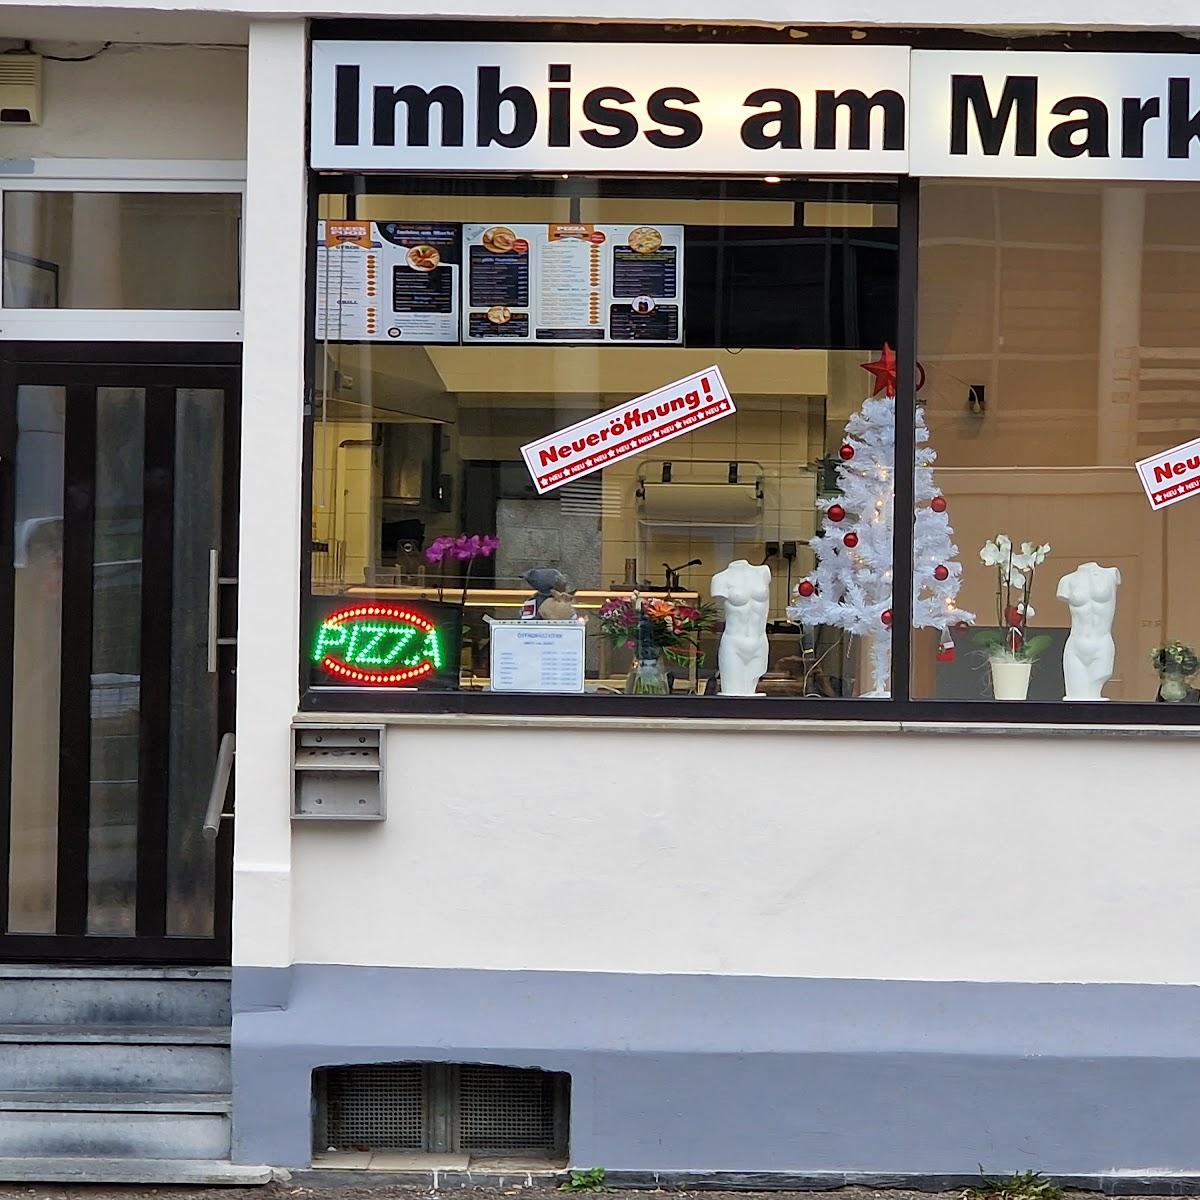 Restaurant "Imbiss am Markt" in Stolberg